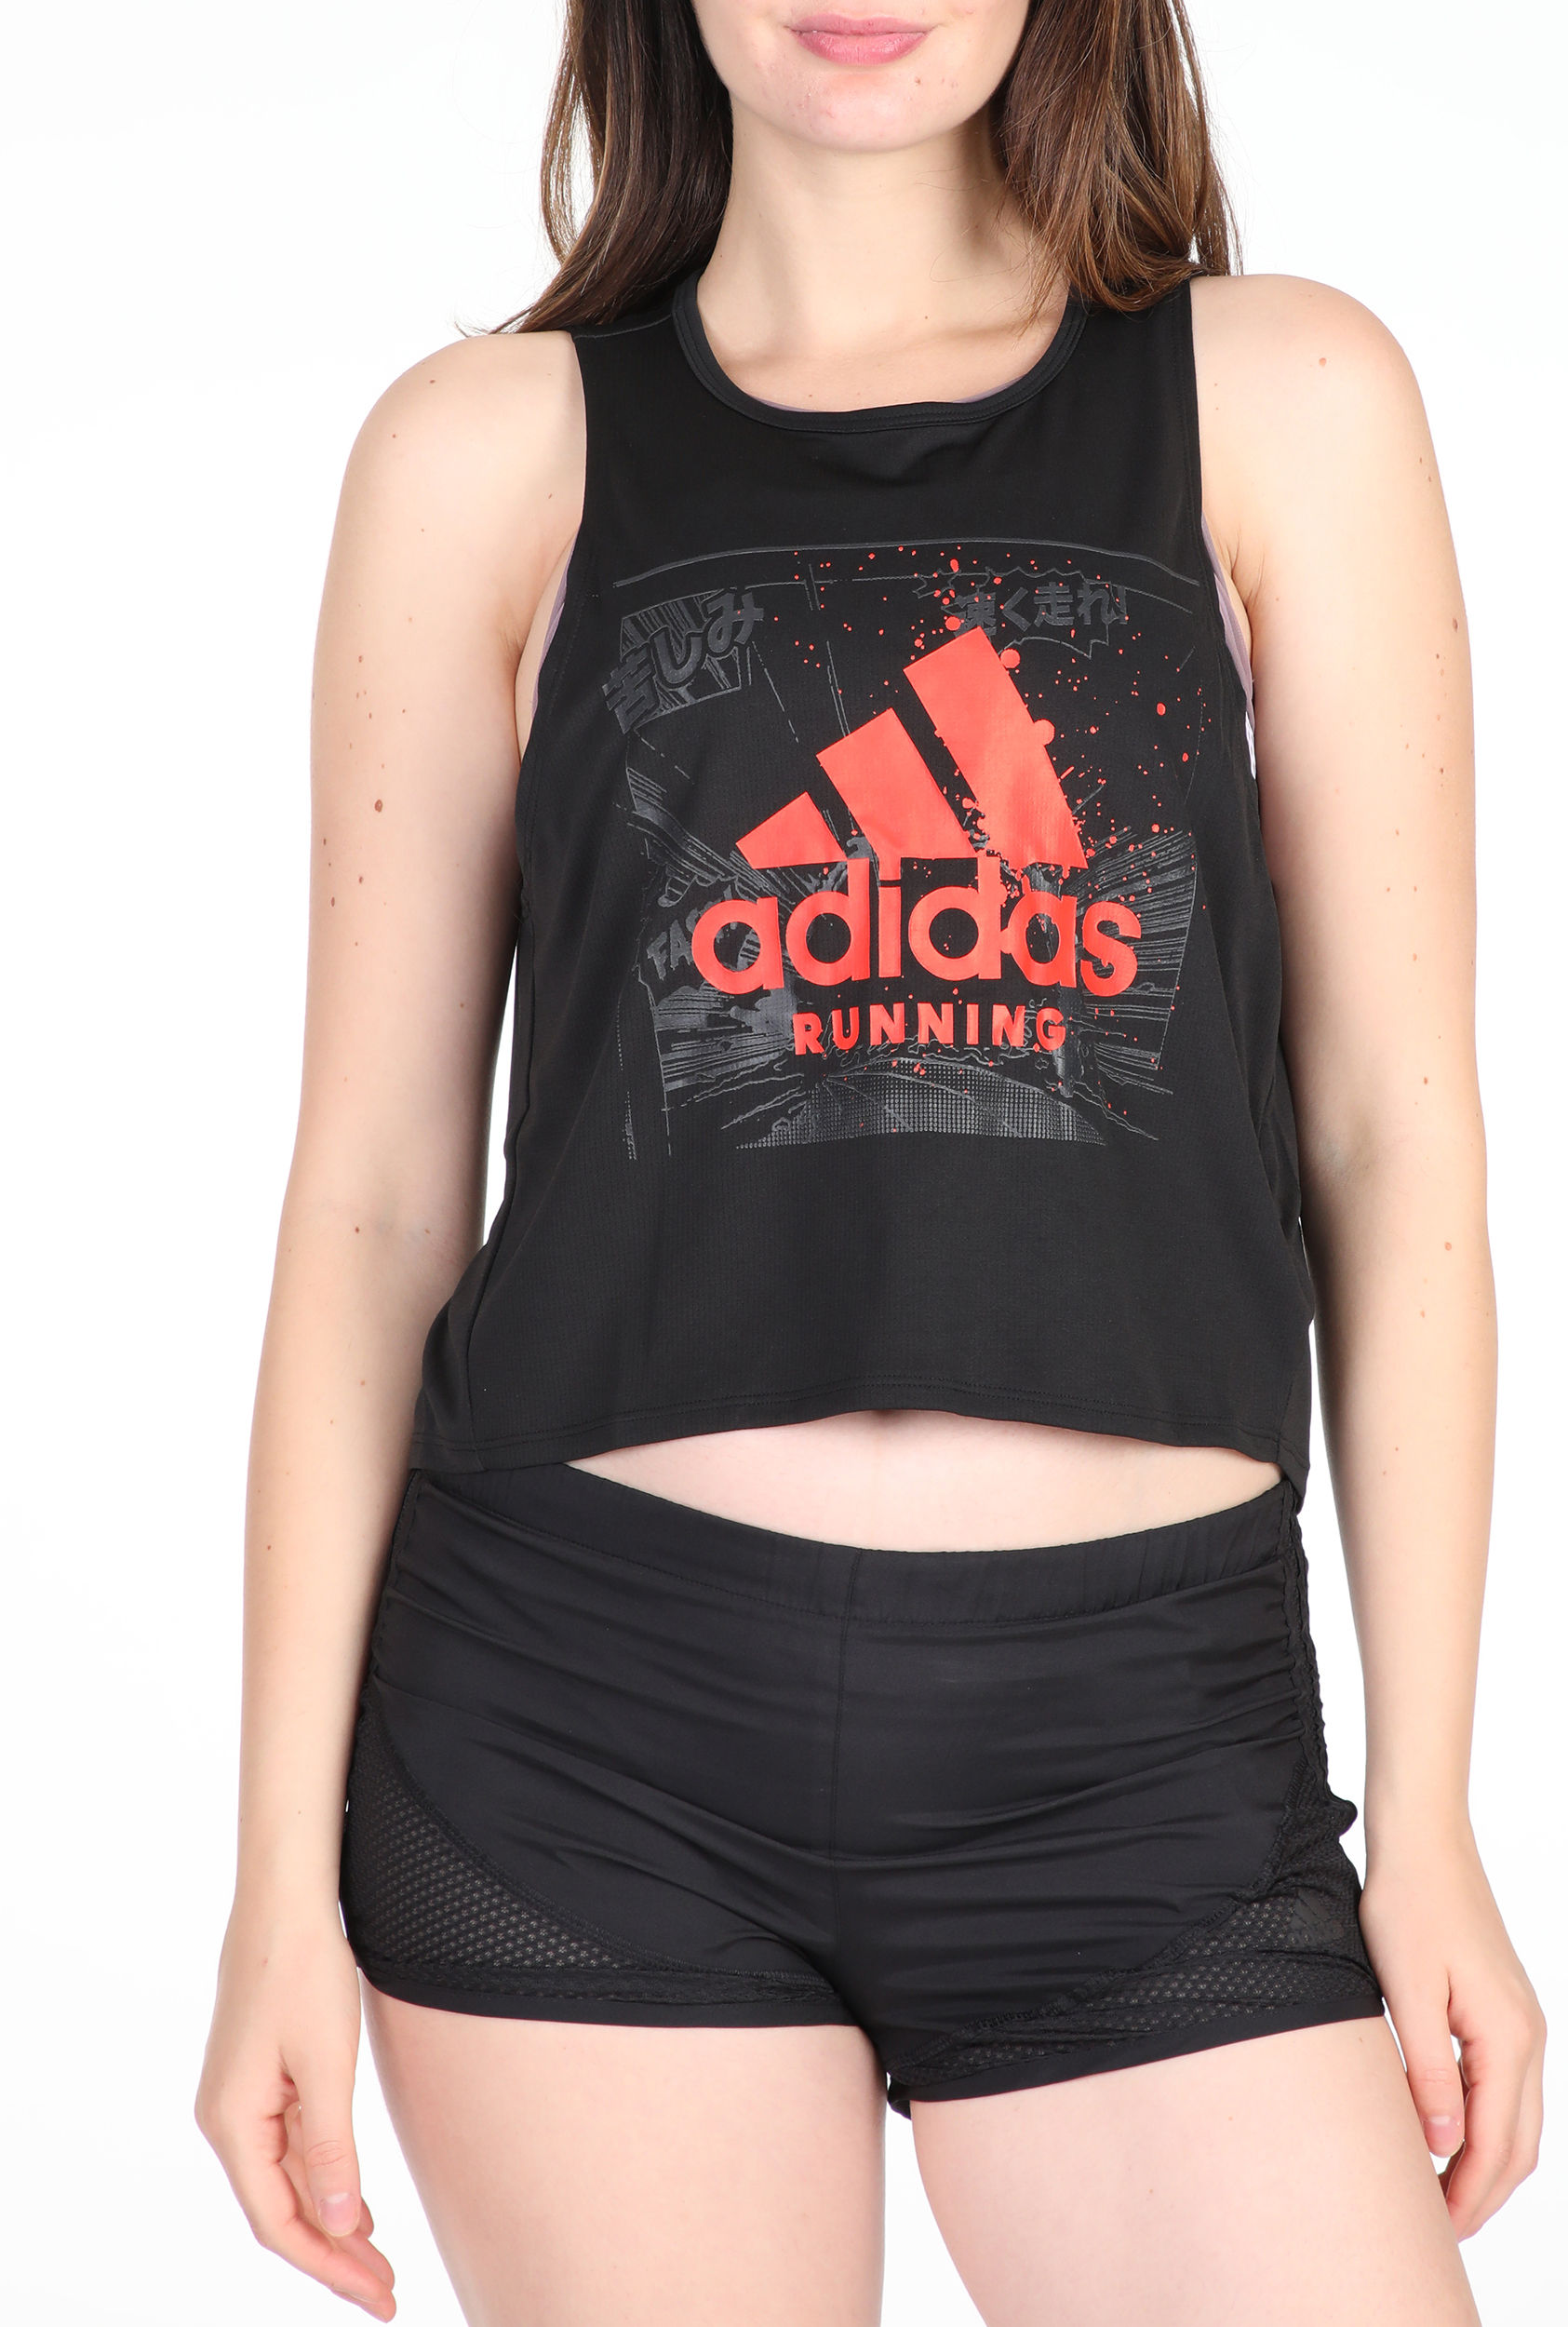 Γυναικεία/Ρούχα/Αθλητικά/T-shirt-Τοπ adidas Performance - Γυναικείο top adidas Performance FAST GFX μαύρο